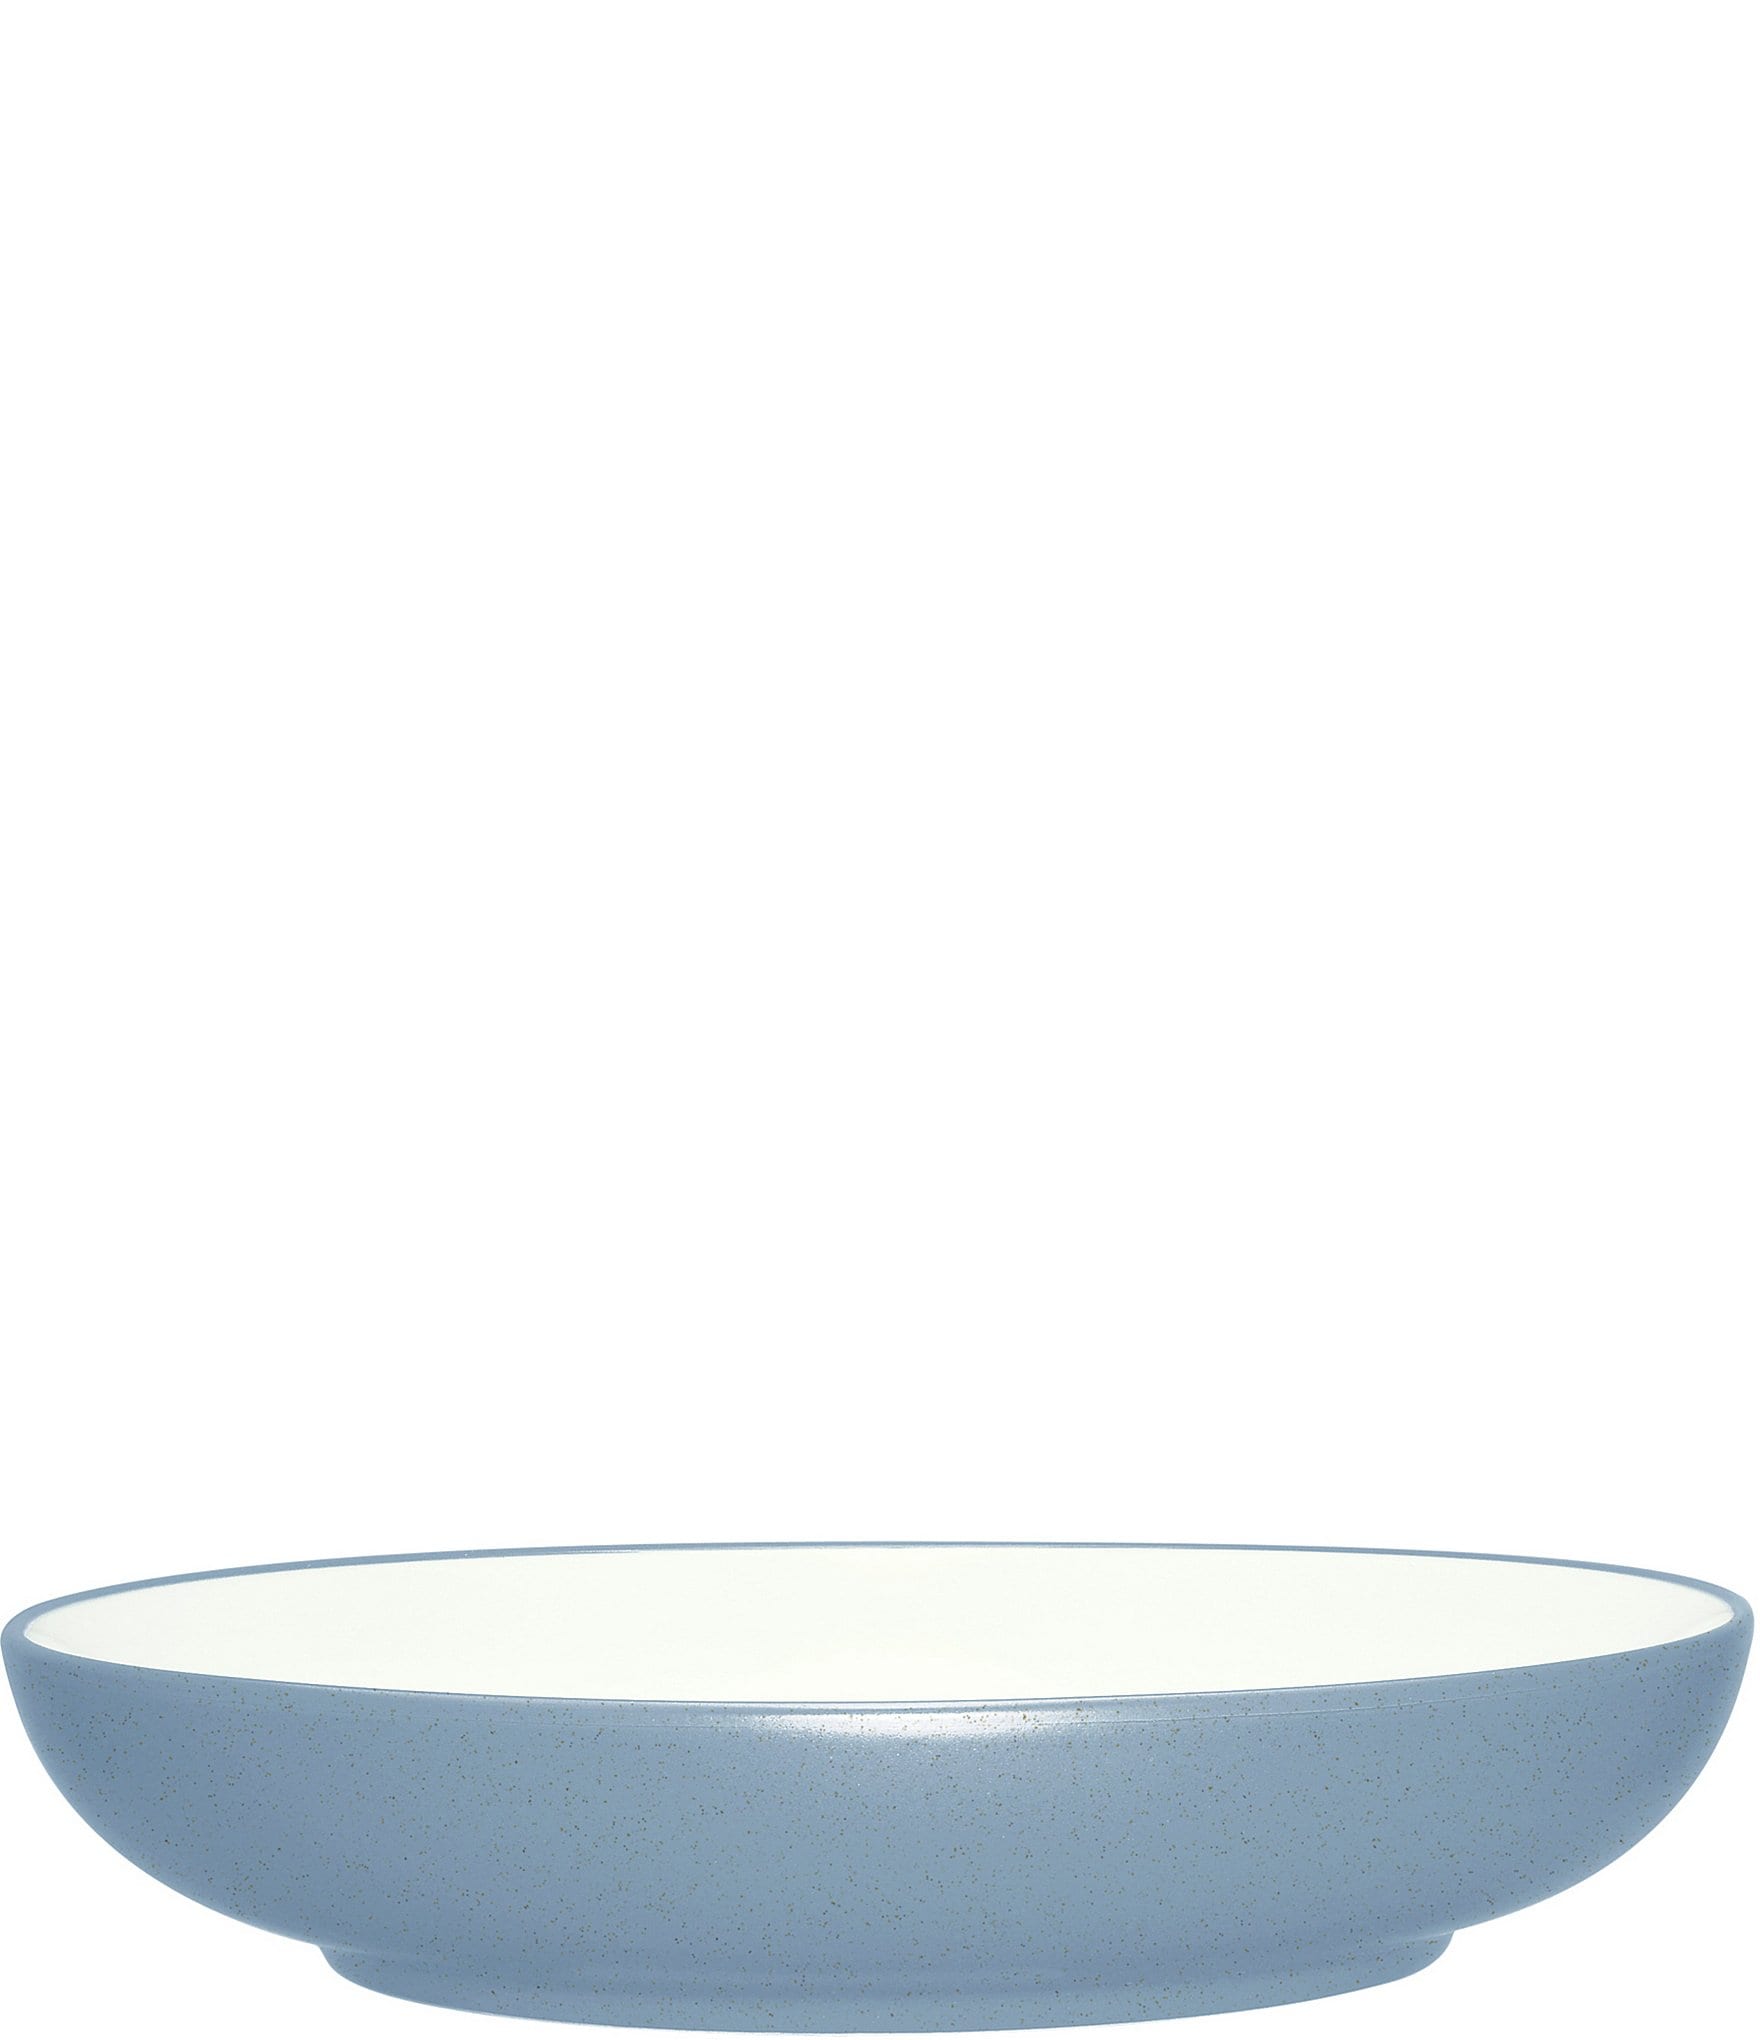 Noritake Colorwave Pasta Serving Bowl Turquoise 